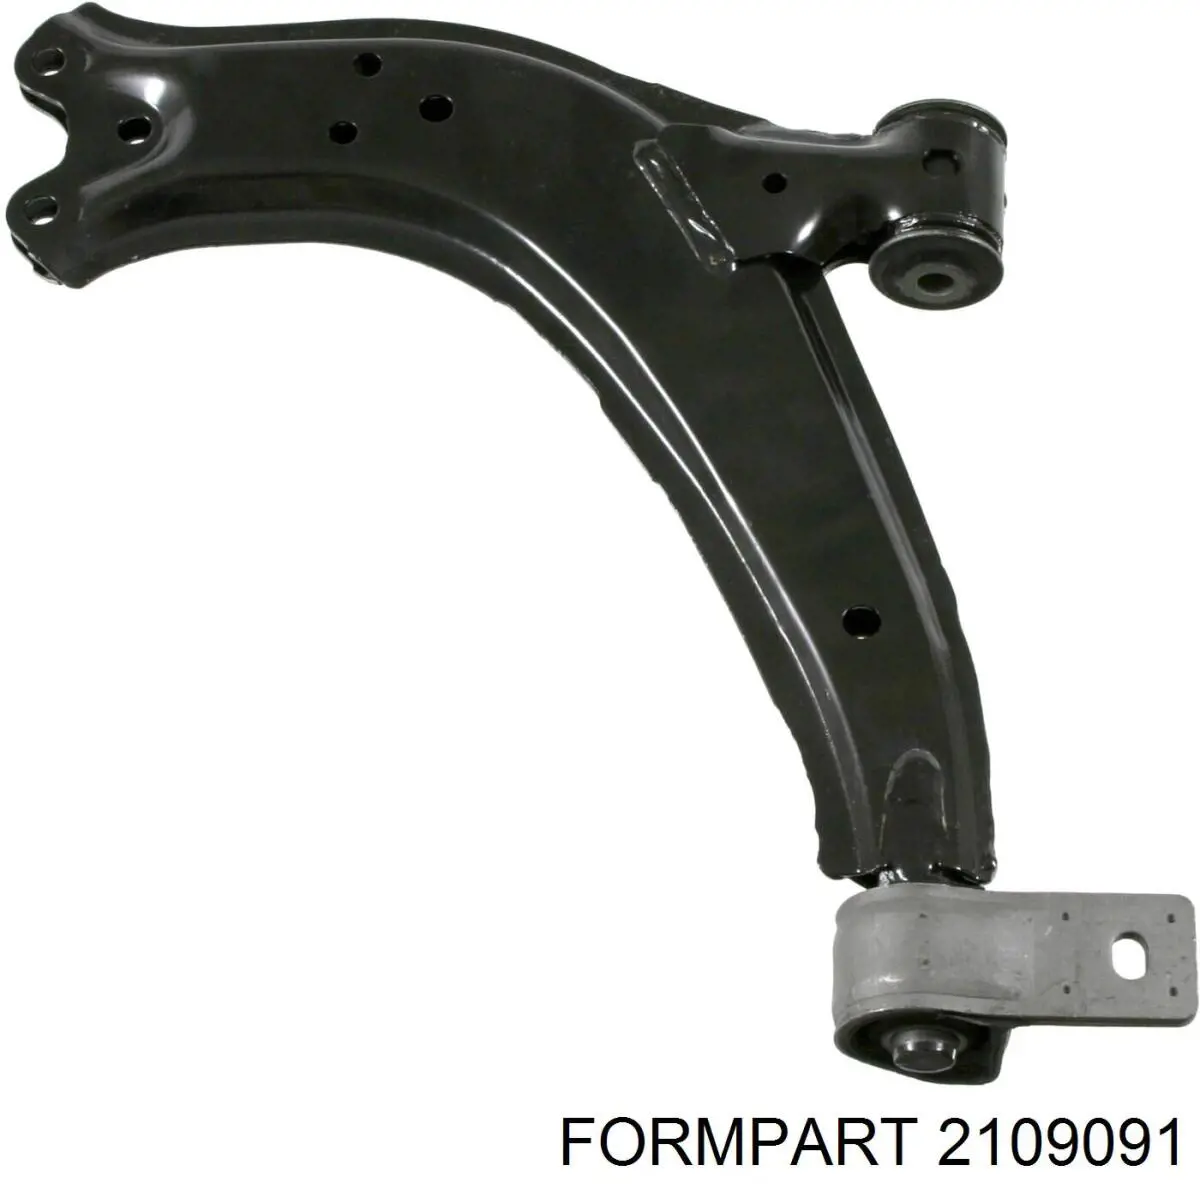 2109091 Formpart/Otoform barra oscilante, suspensión de ruedas delantera, inferior izquierda